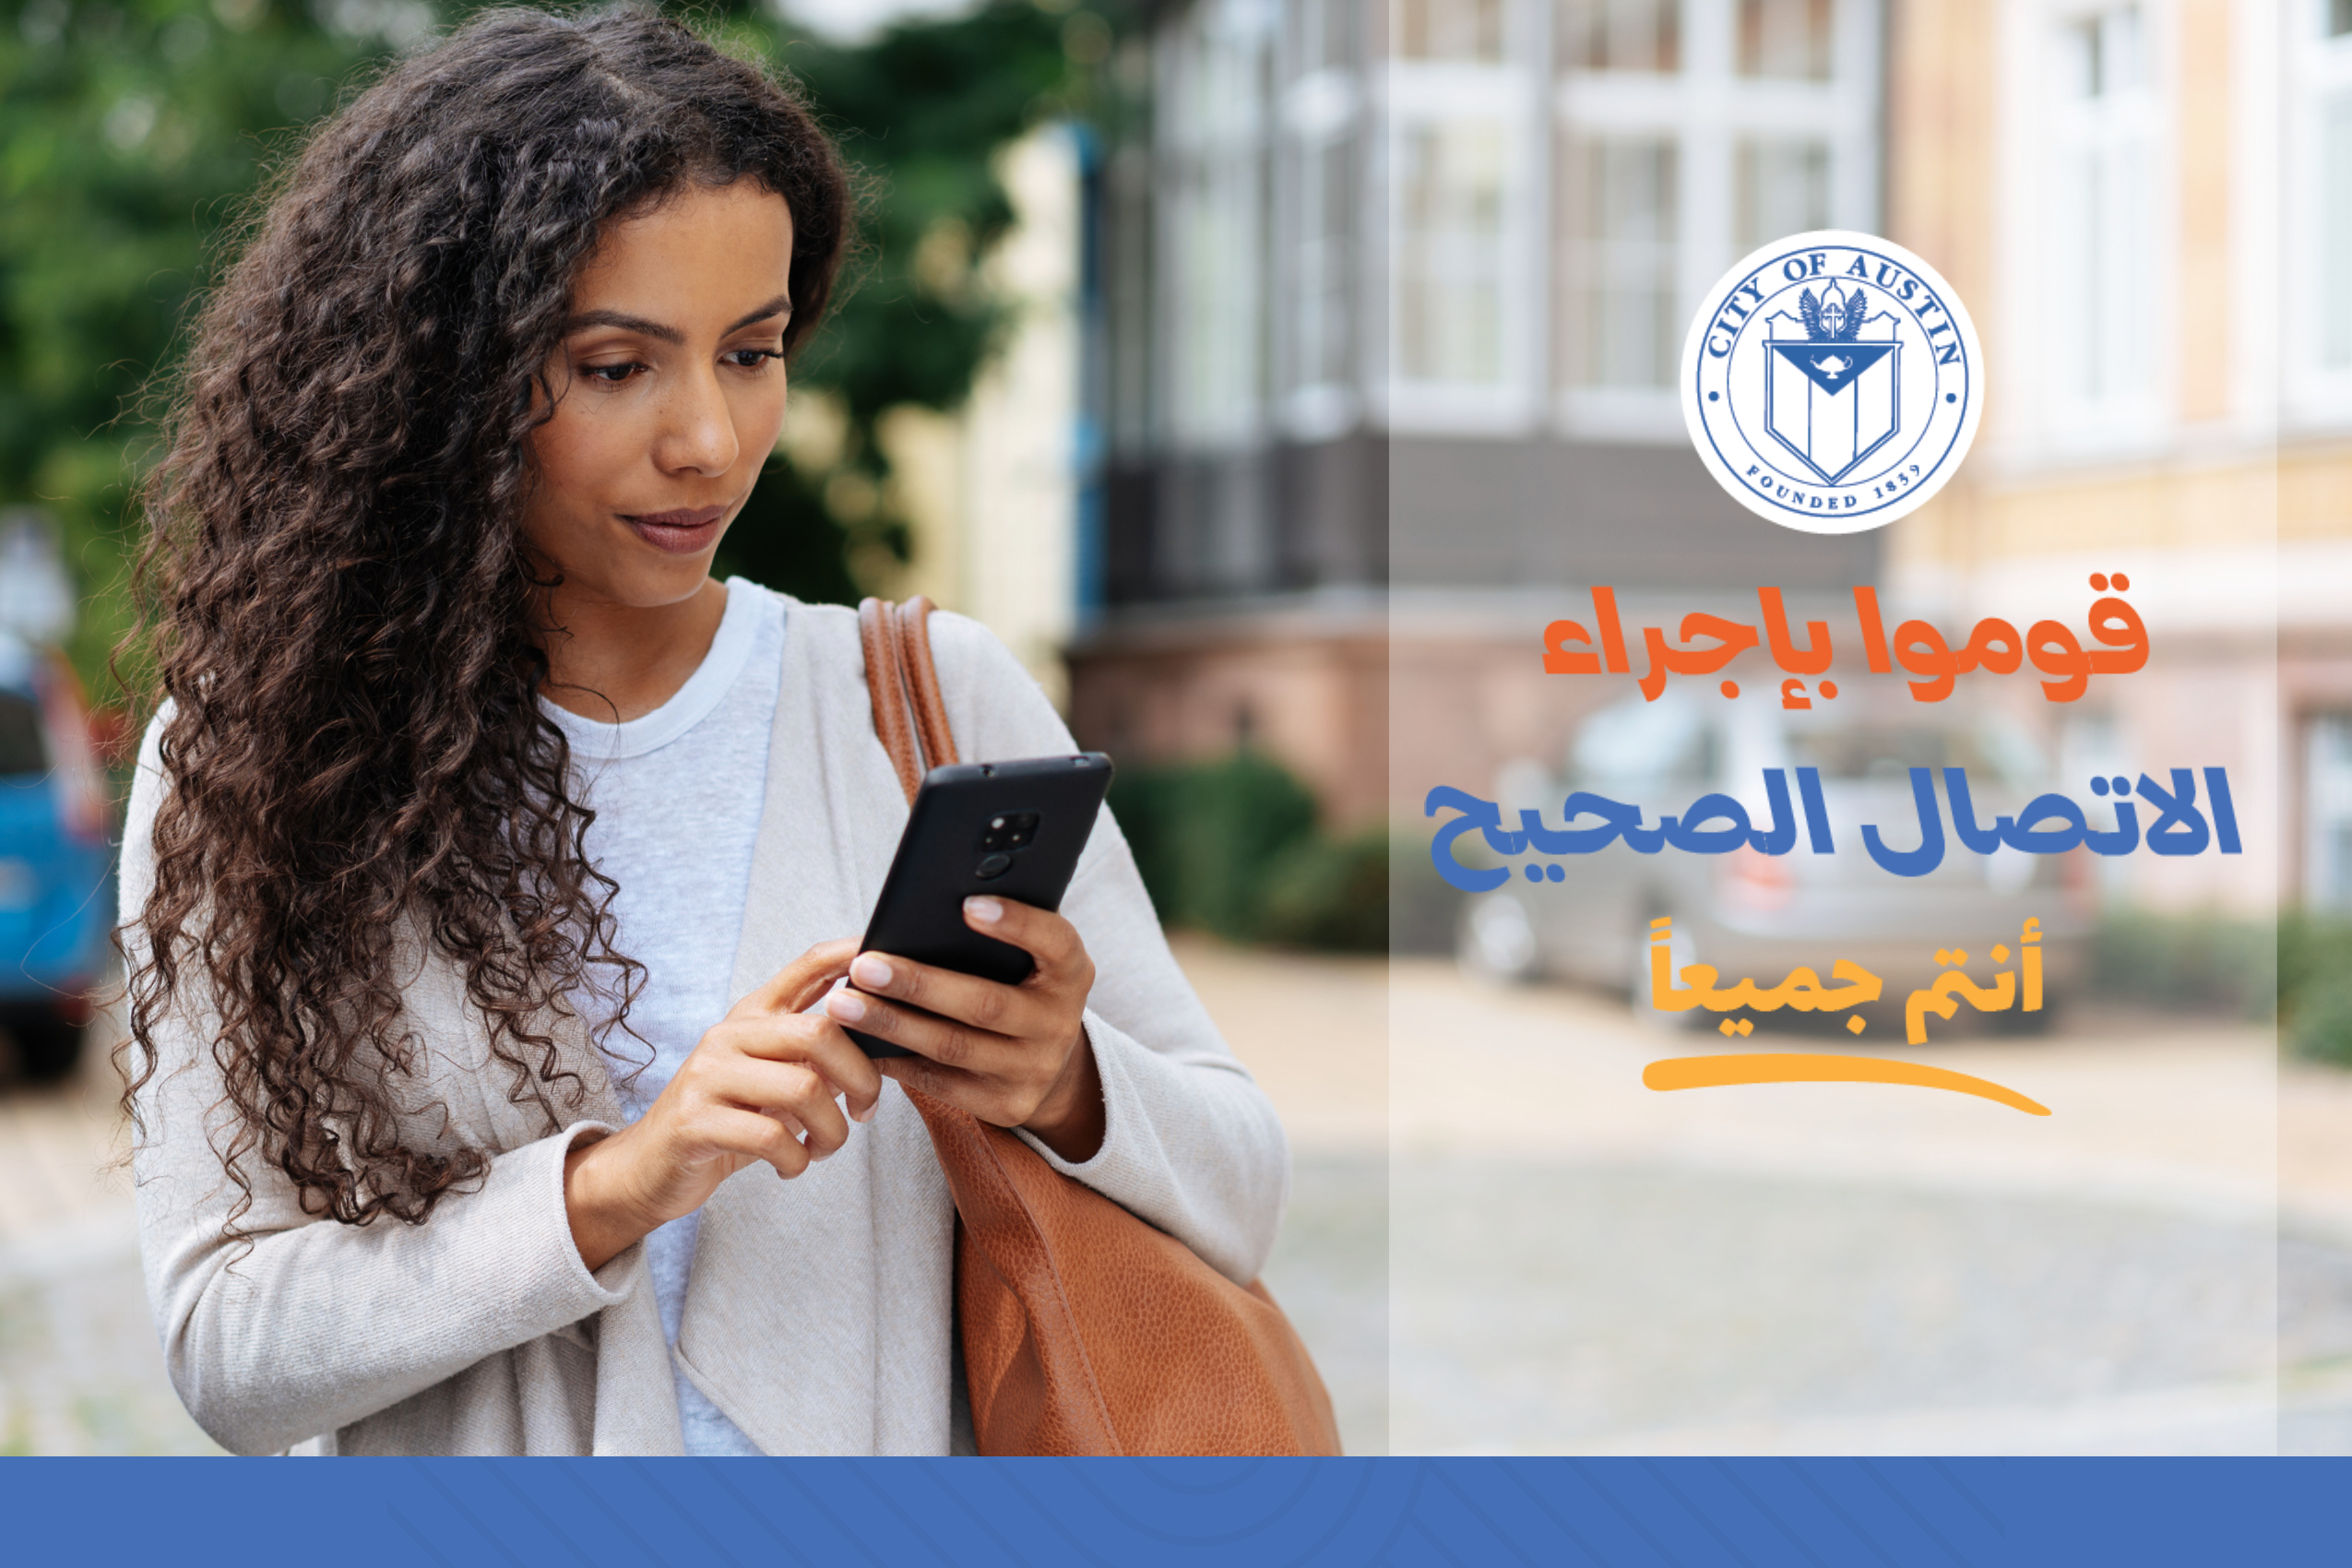 Make the Right Call Promo Graphic- Arabic